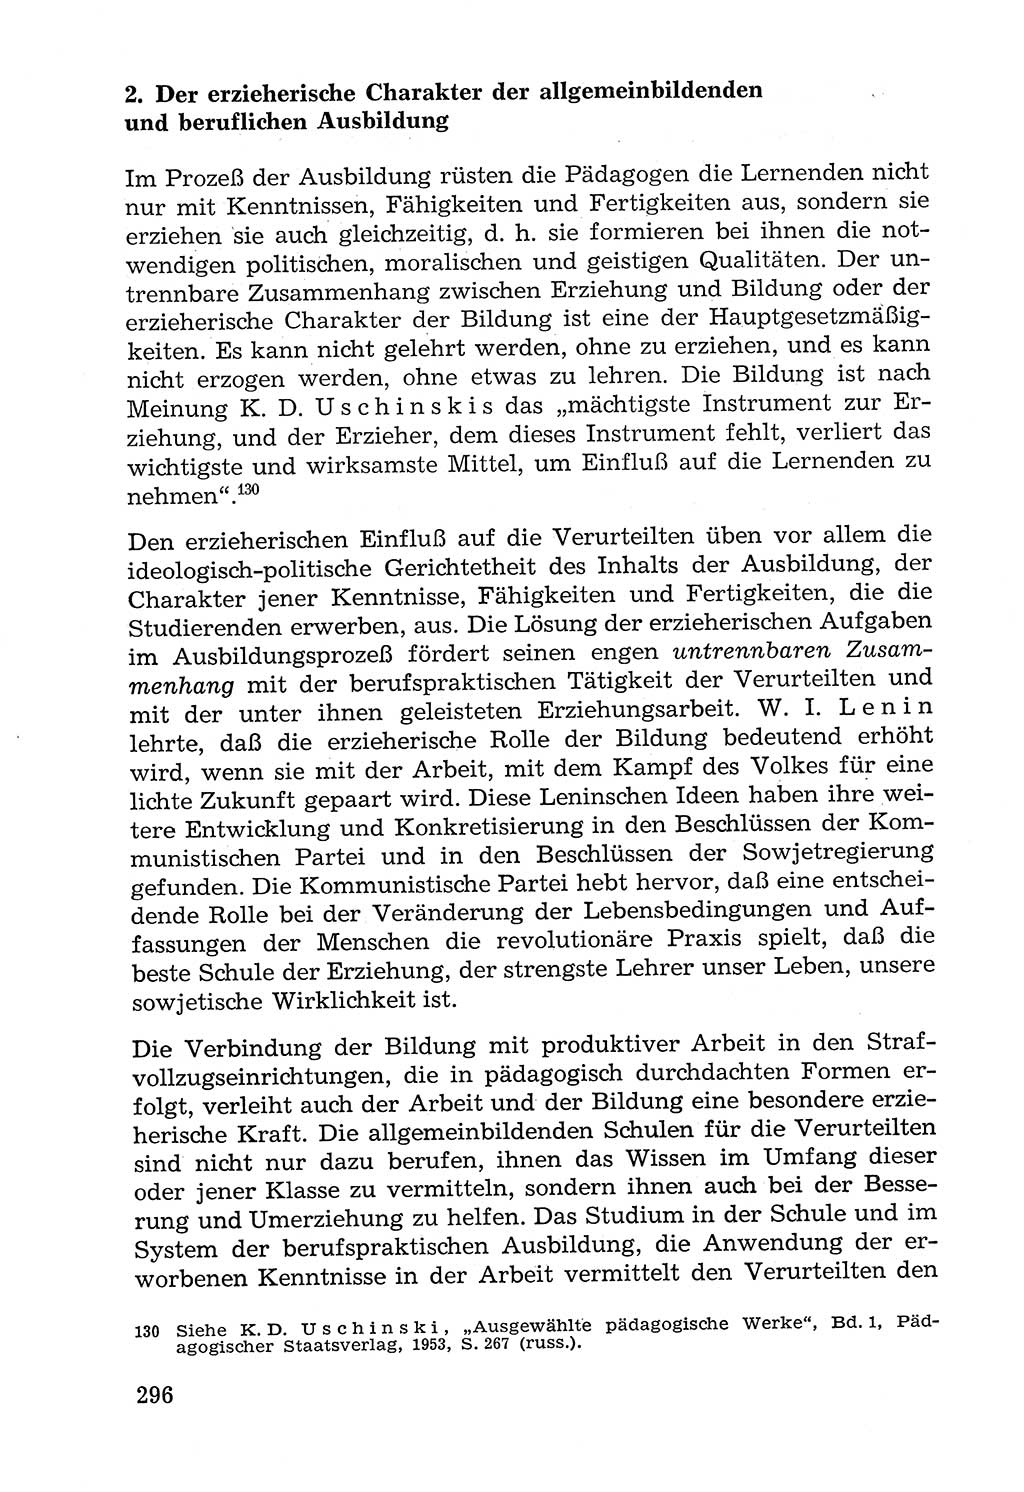 Lehrbuch der Strafvollzugspädagogik [Deutsche Demokratische Republik (DDR)] 1969, Seite 296 (Lb. SV-Pd. DDR 1969, S. 296)